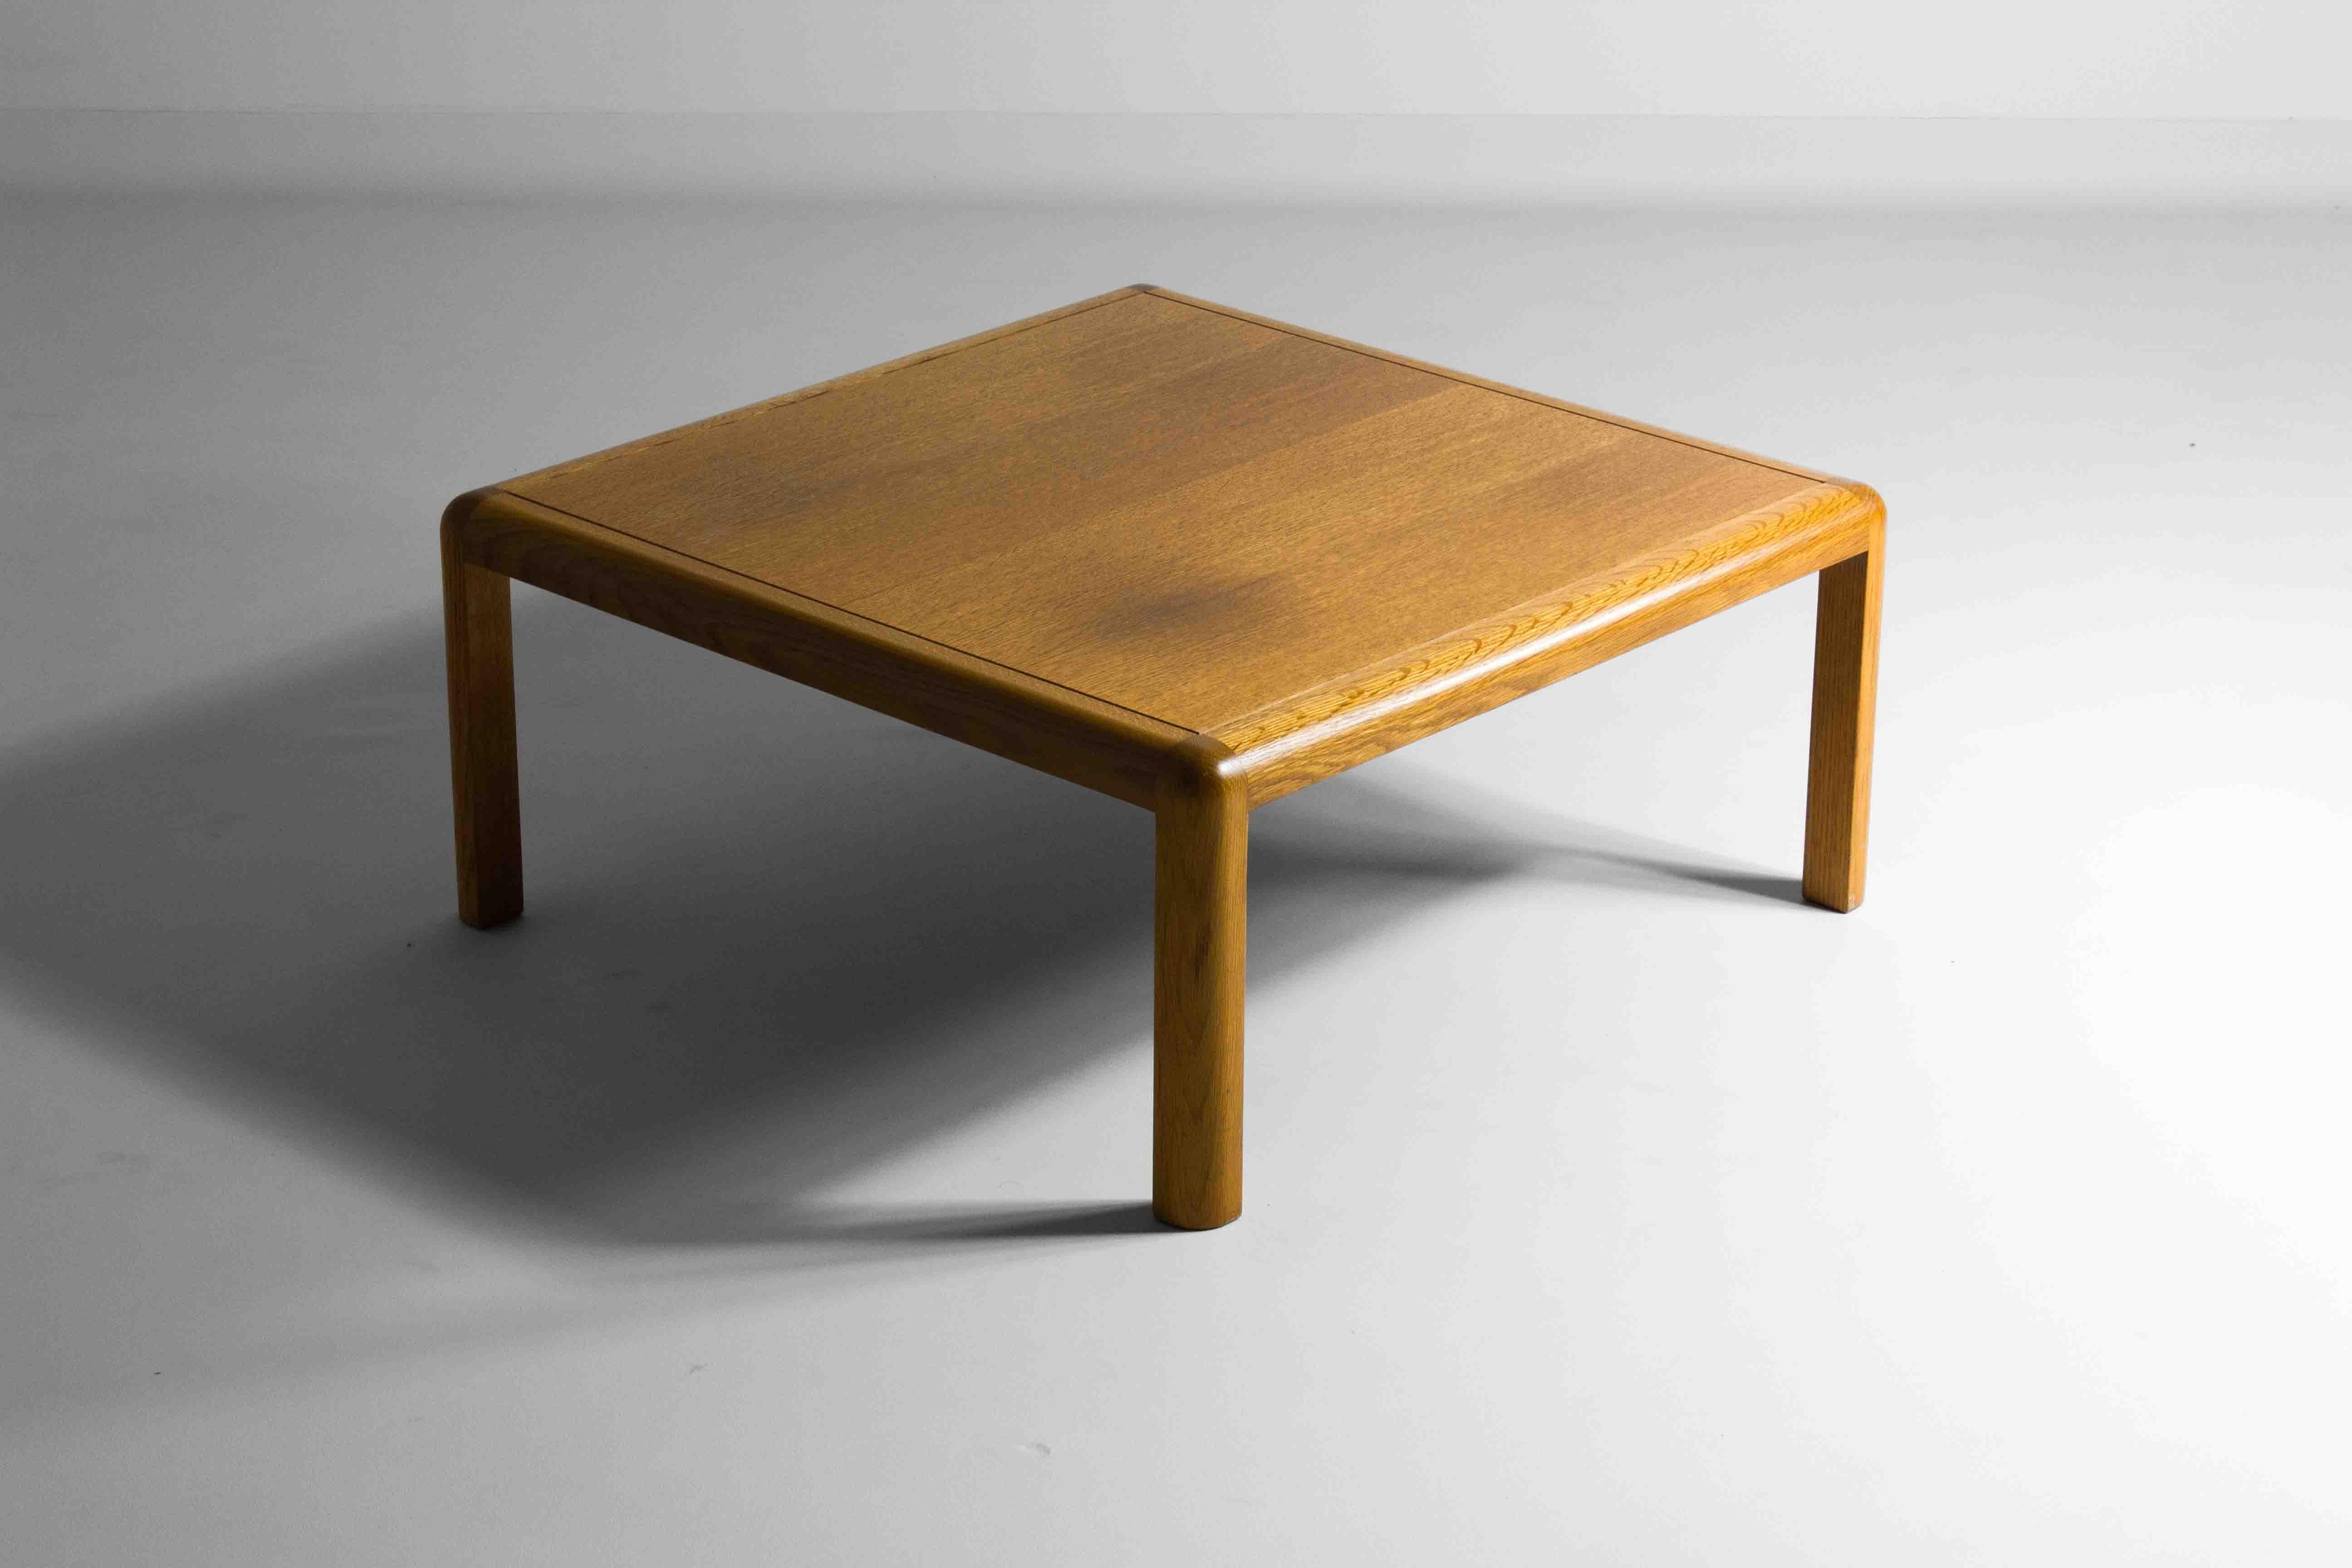 Cette table basse carrée minimaliste aux coins arrondis a été fabriquée par Van den Berghe - Pauvers dans les années 1970 en Belgique. Le chaud chêne de première qualité se marie très bien avec les formes épurées de la table.